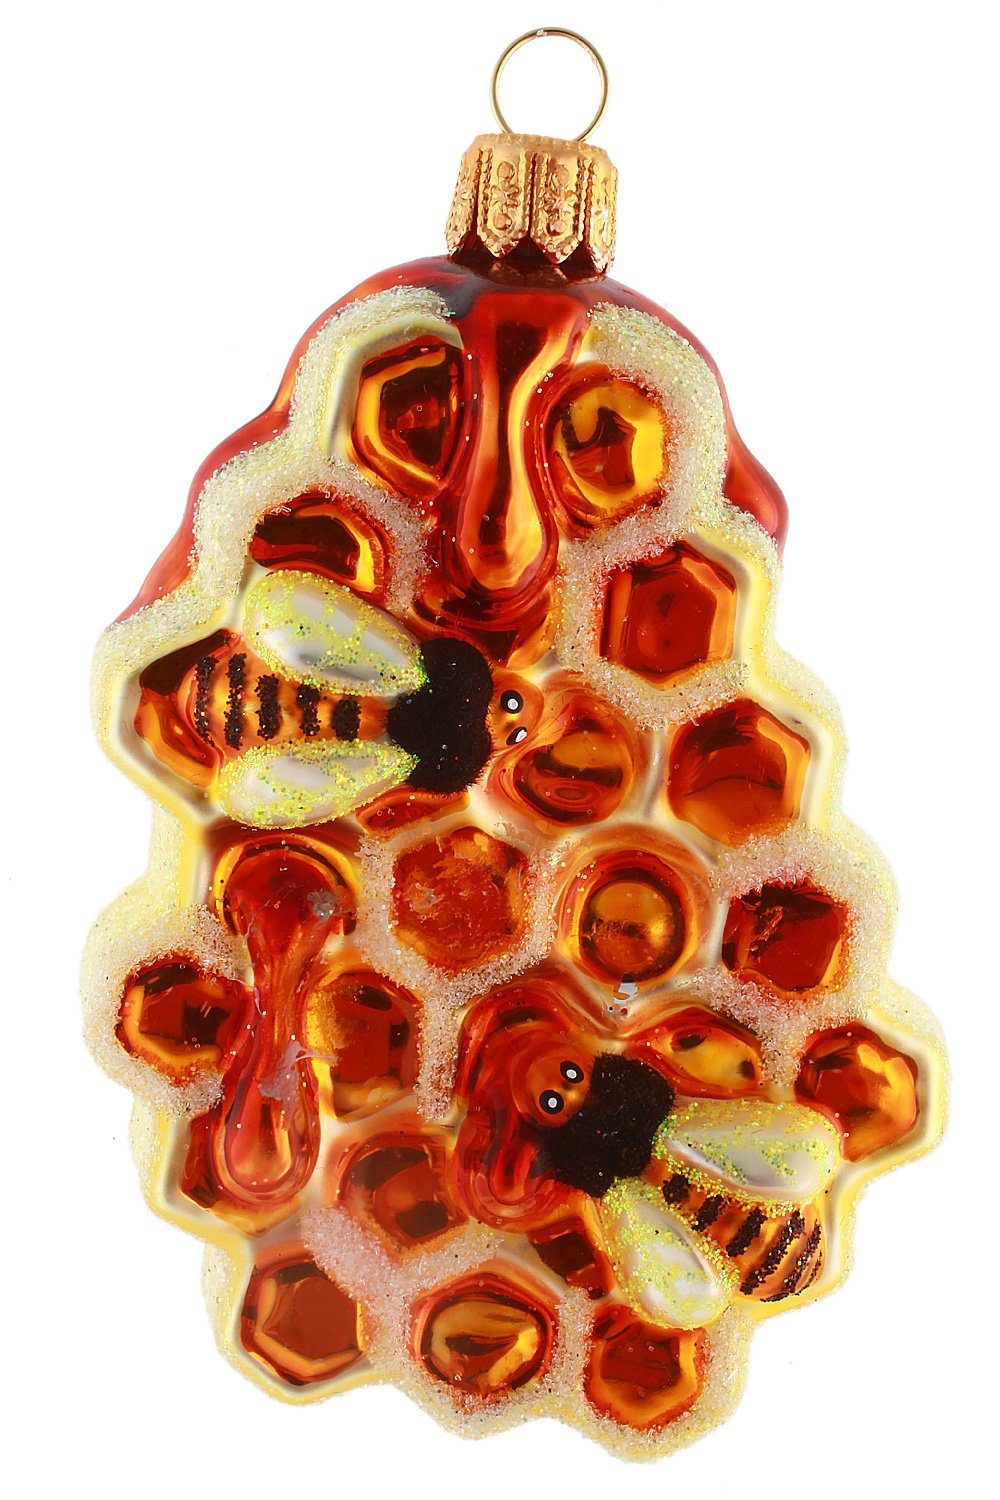 Weihnachtskontor Bienen, Honigwabe handdekoriert mit Christbaumschmuck Hamburger mundgeblasen -